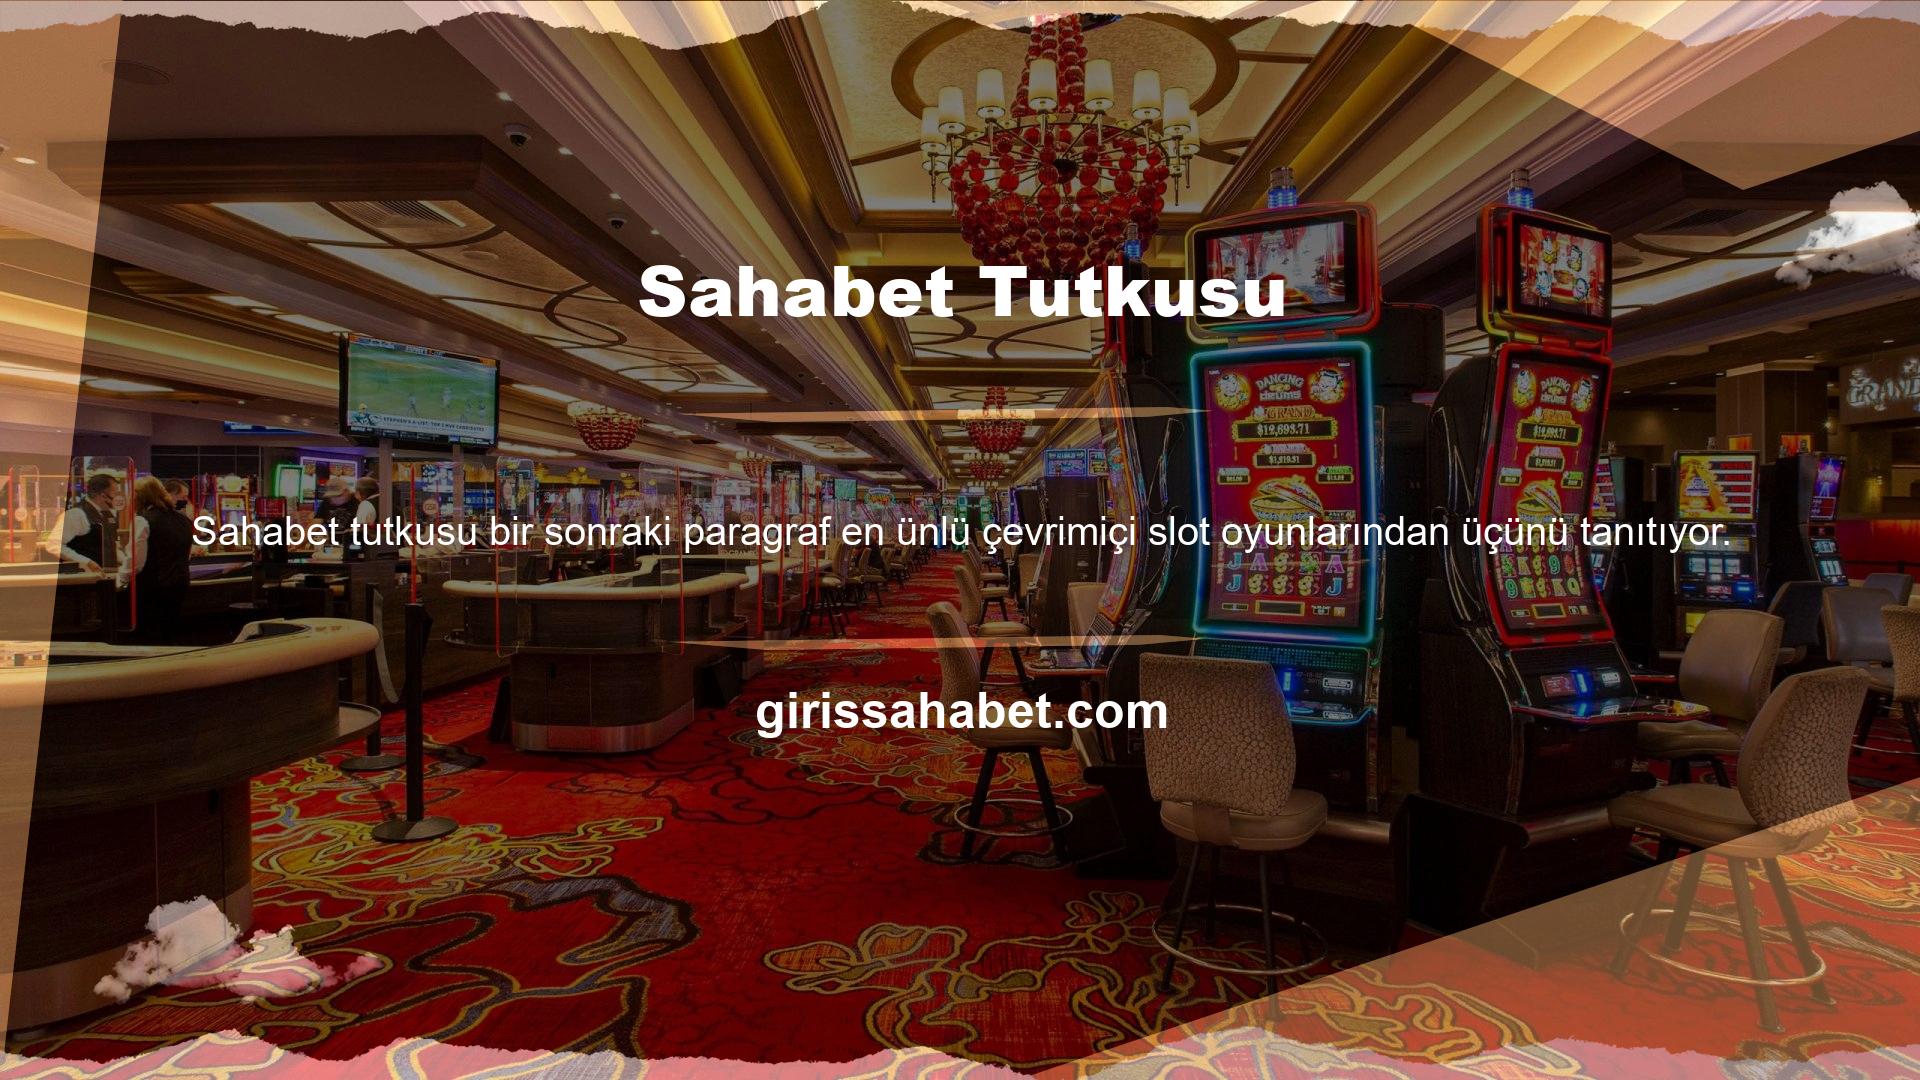 Çevrimiçi casino endüstrisi, büyük ölçüde slot makinesi casino oyunlarının kullanımına bağımlıdır